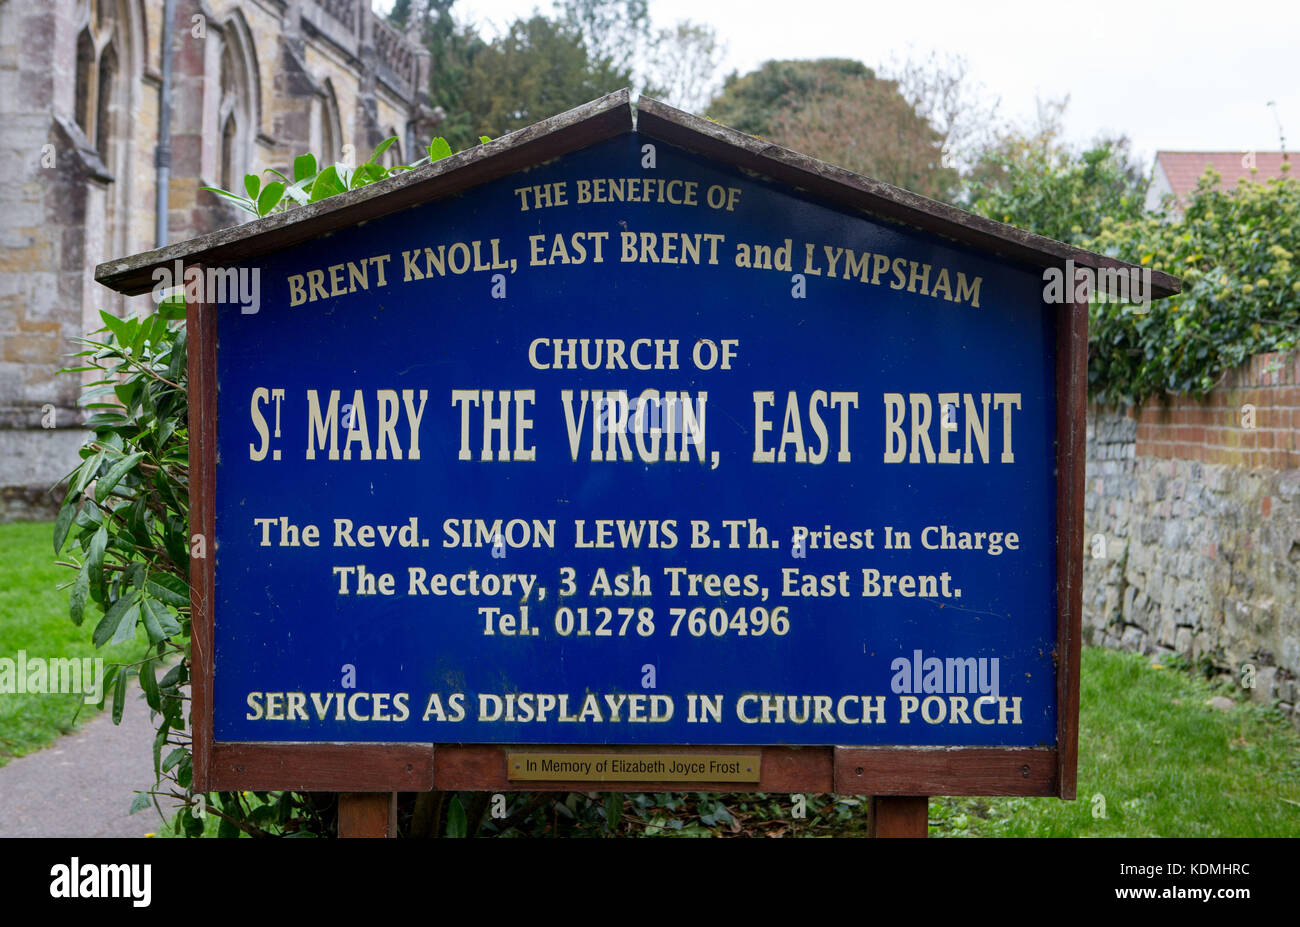 Une vue générale de St Mary the Virgin, east brent, Somerset, Angleterre où tout-rond ben stokes et sa fiancée clare ratcliffe sont d'être mariés. Banque D'Images